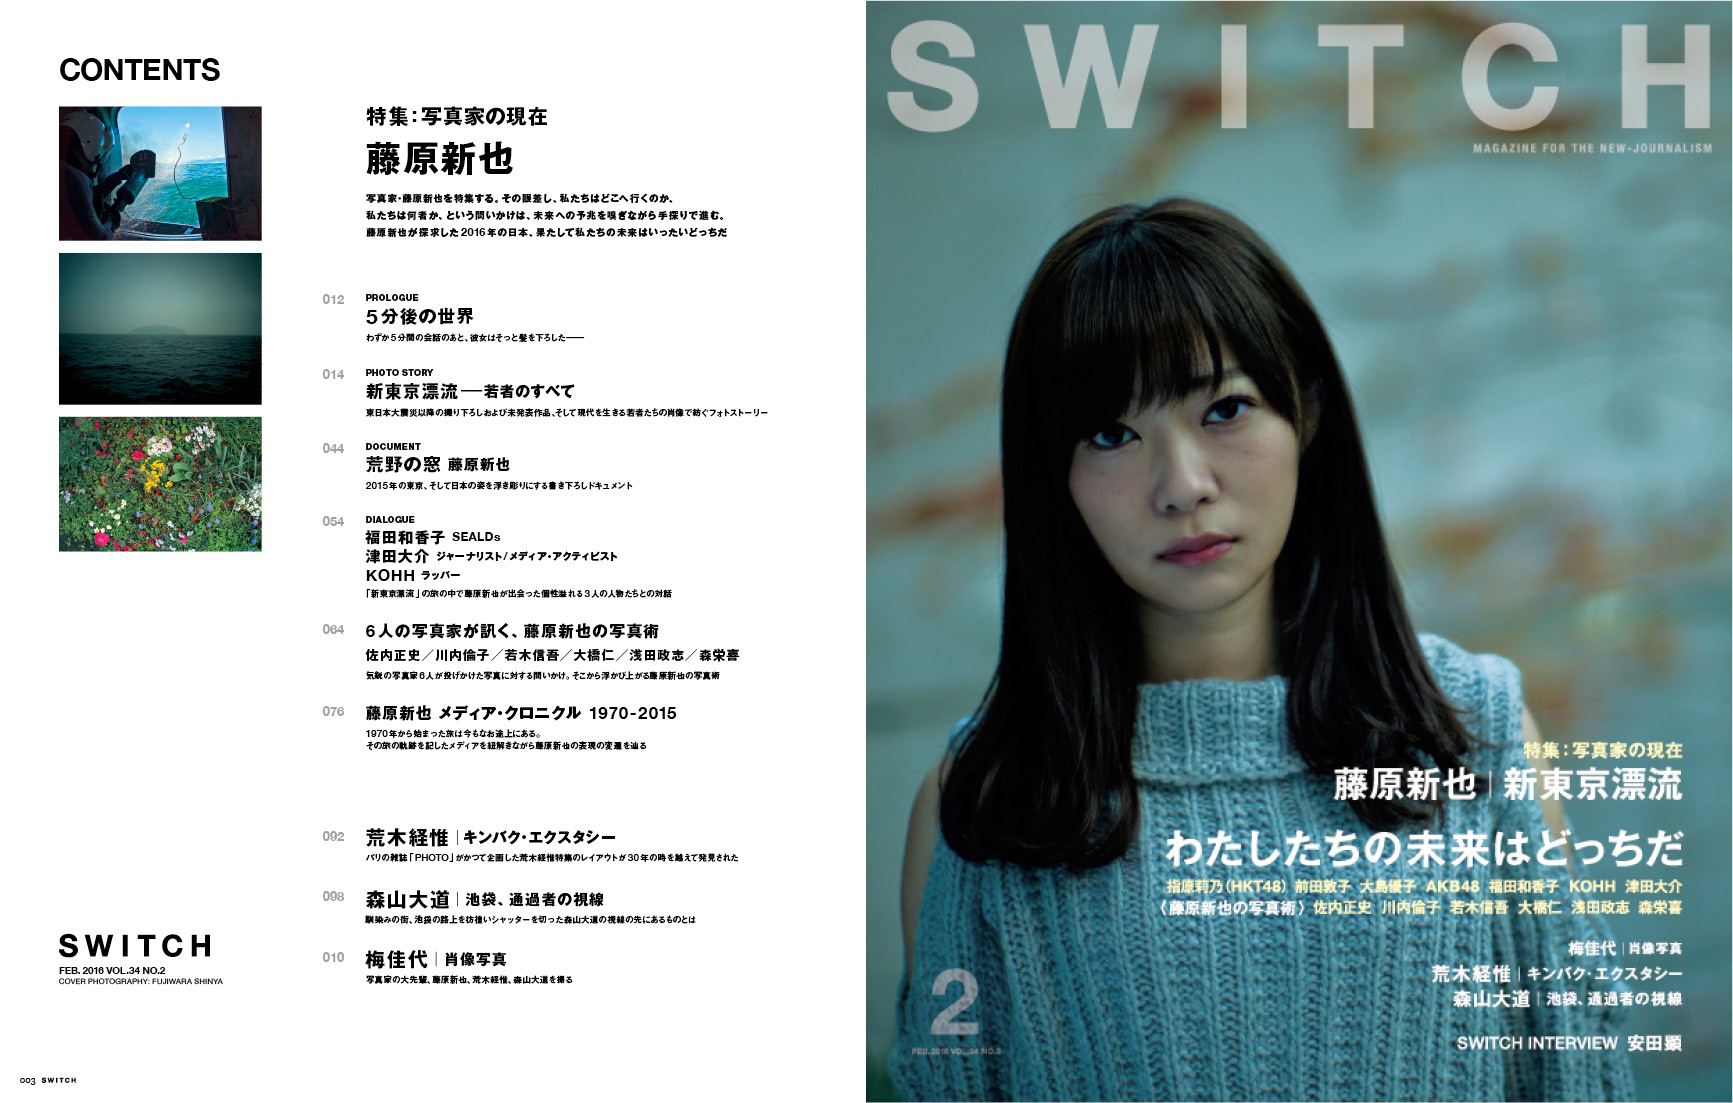 SWITCH Vol.34 No.2 藤原新也 新東京漂流